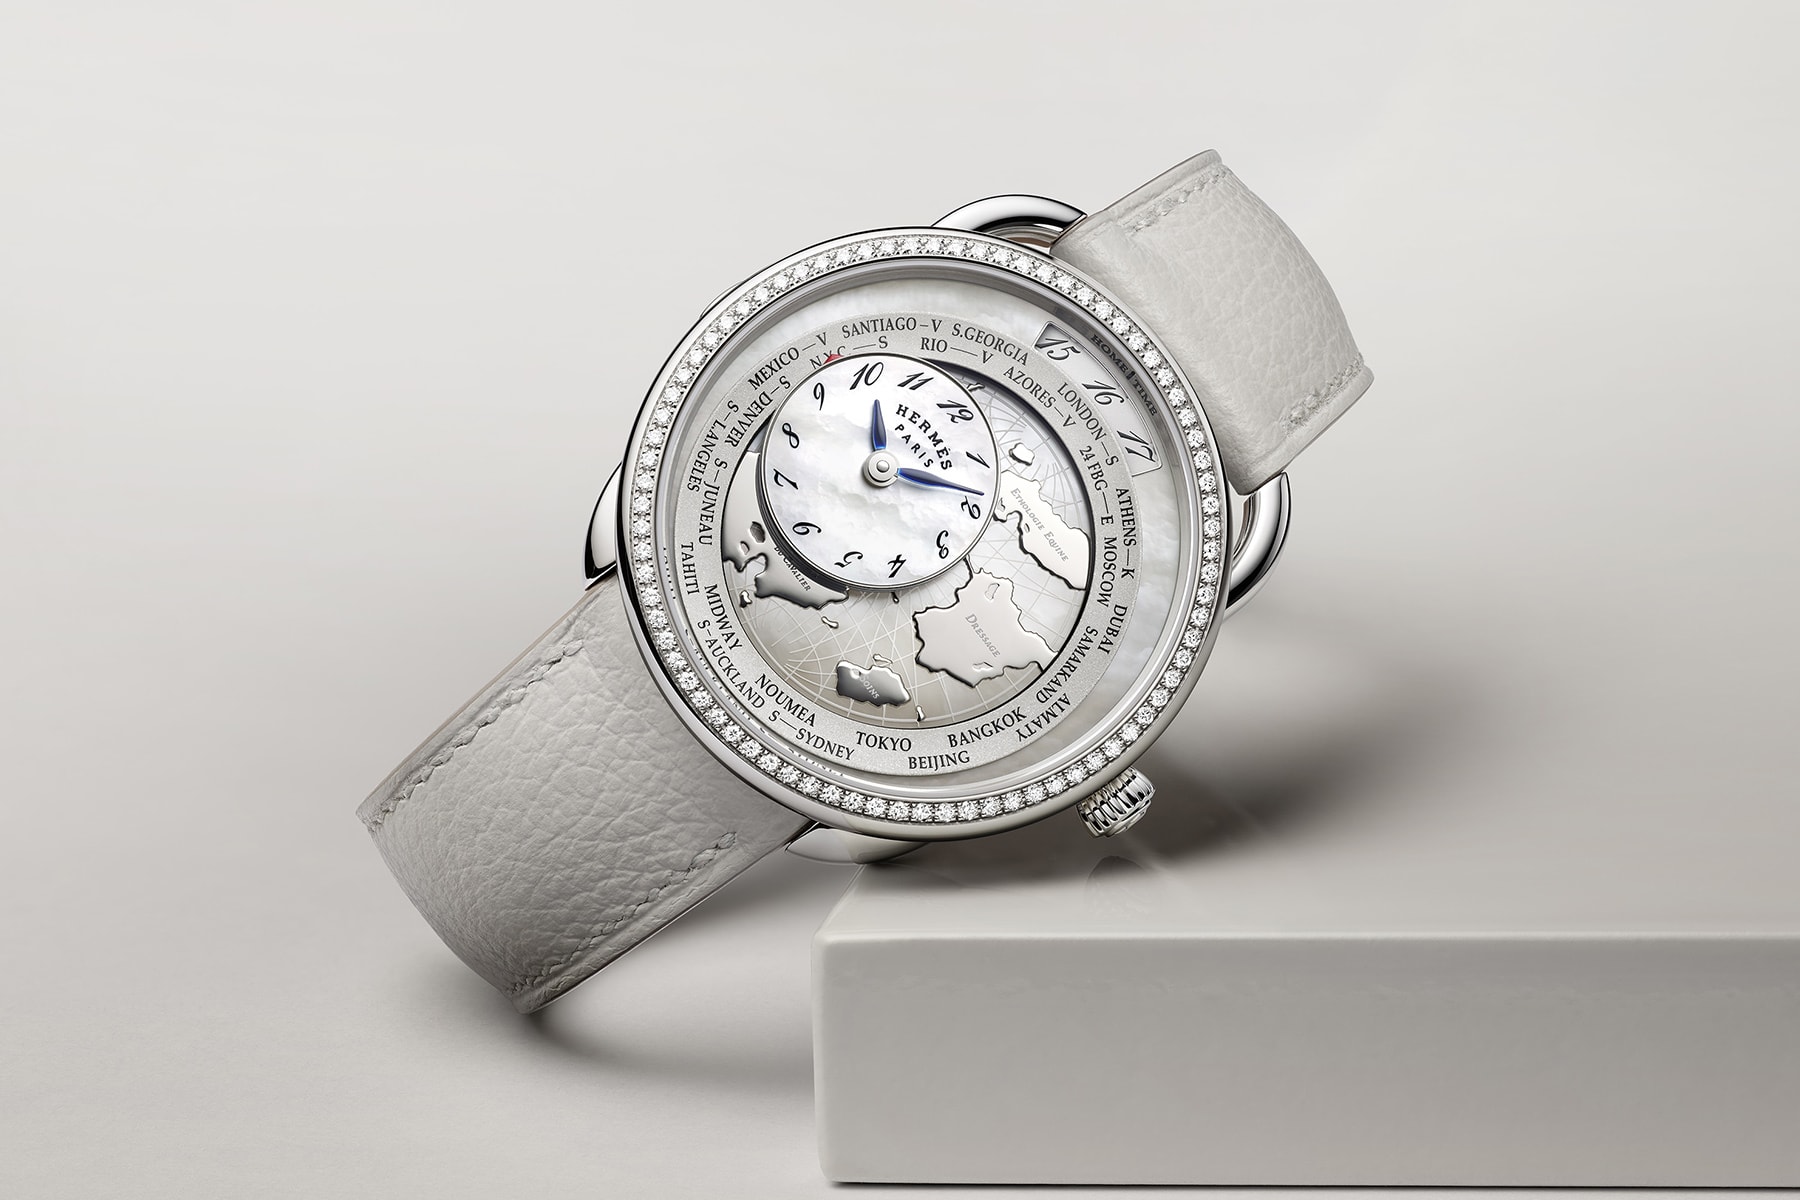 Hermès 全新 Arceau Le Temps Voyageur 錶款正式發售